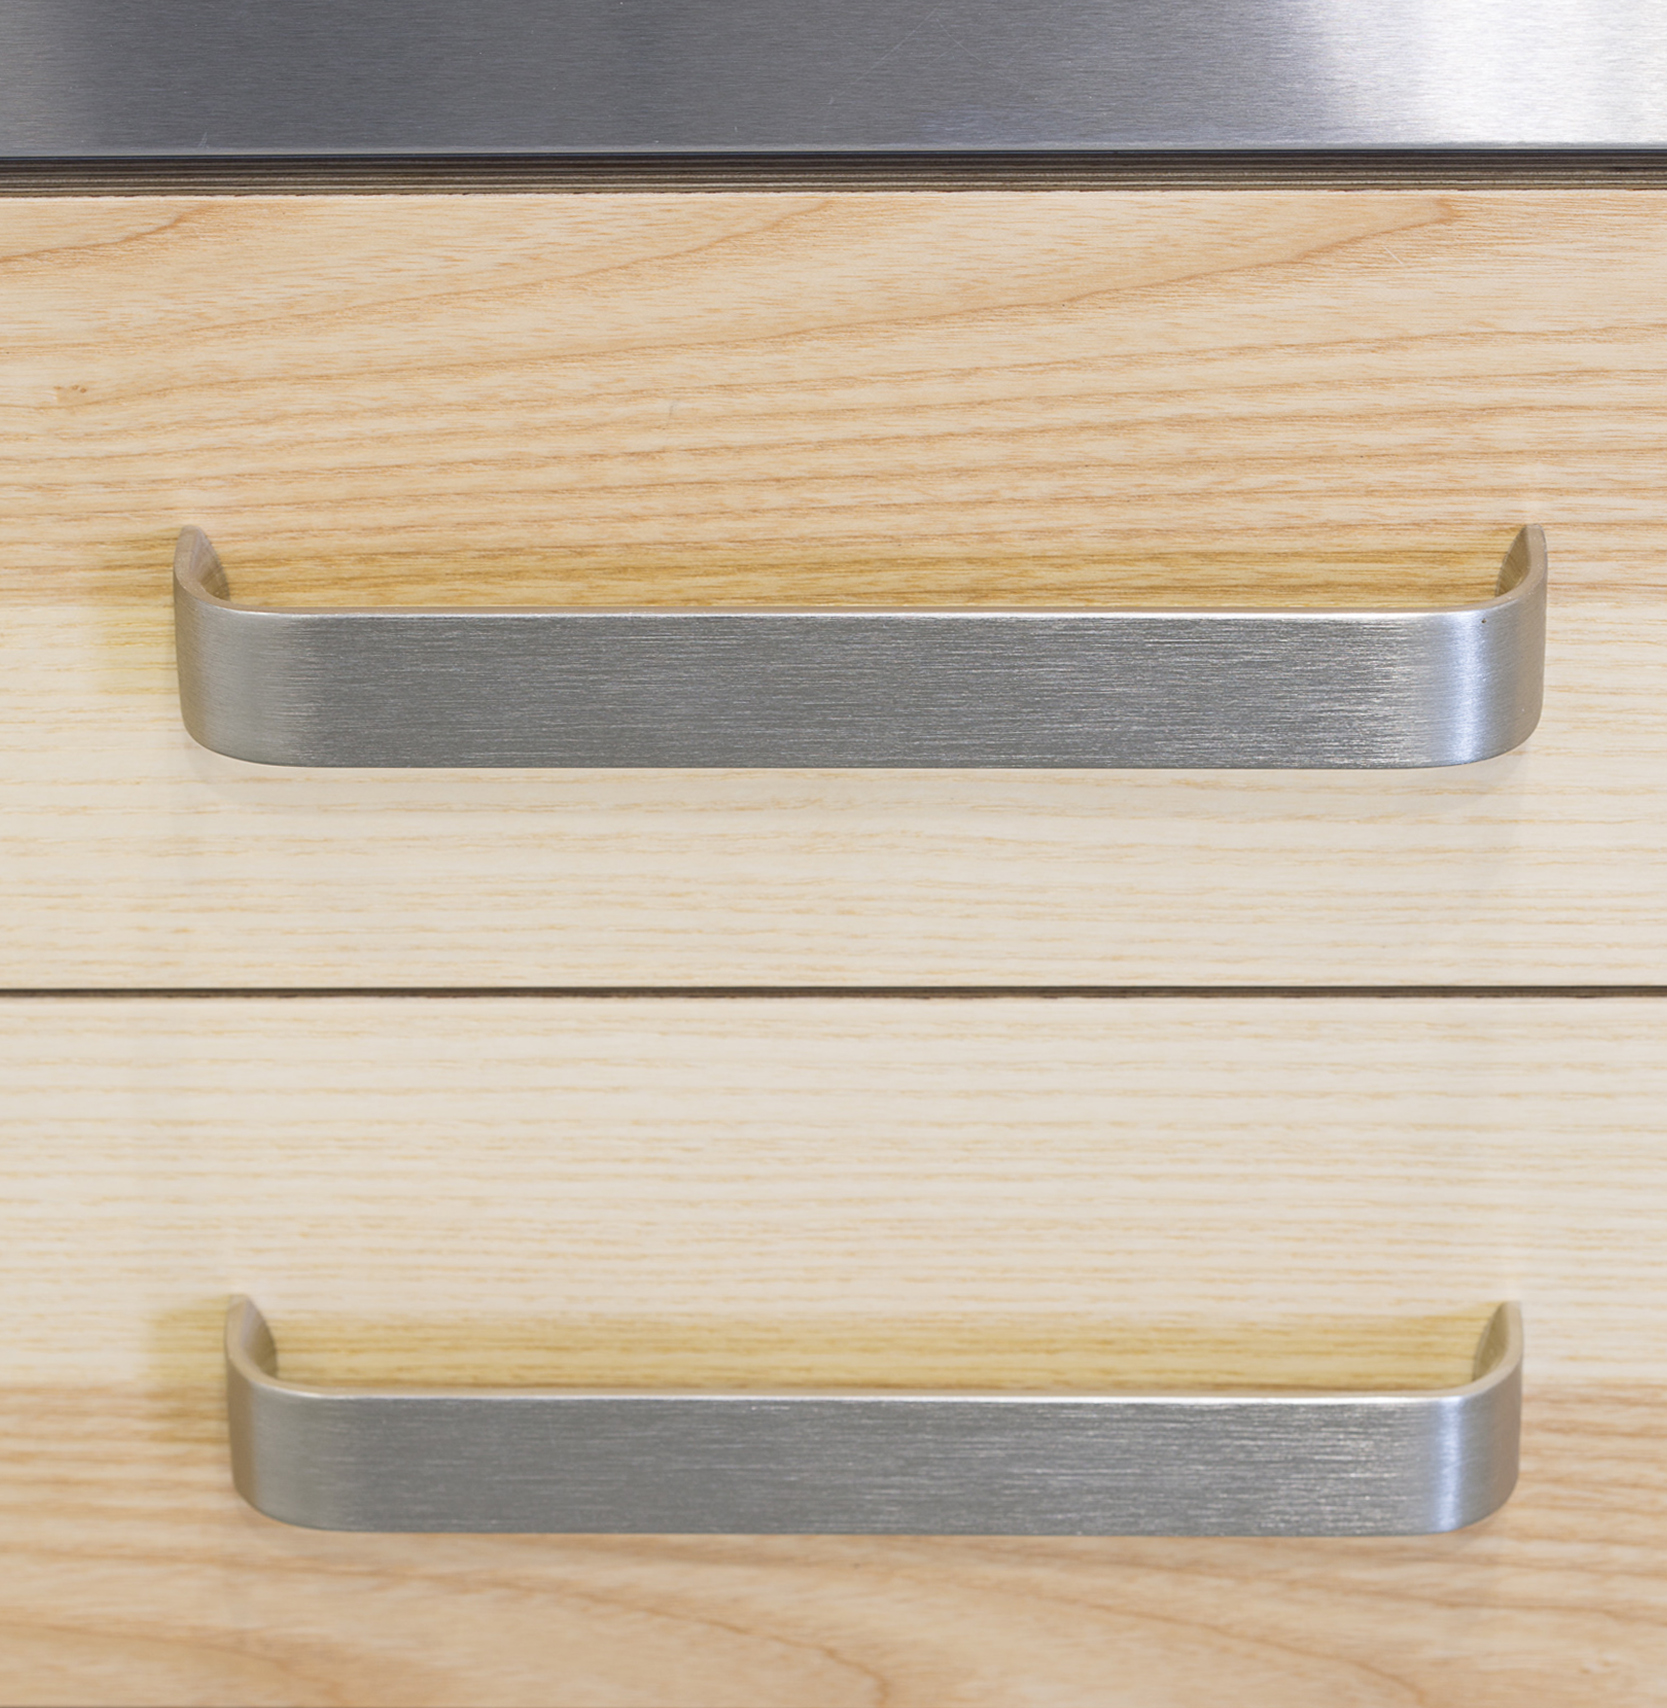 Tirador de aluminio Sense para cocinas modernas / Sense, our aluminum  handle for modern kitchens - Viefe handles